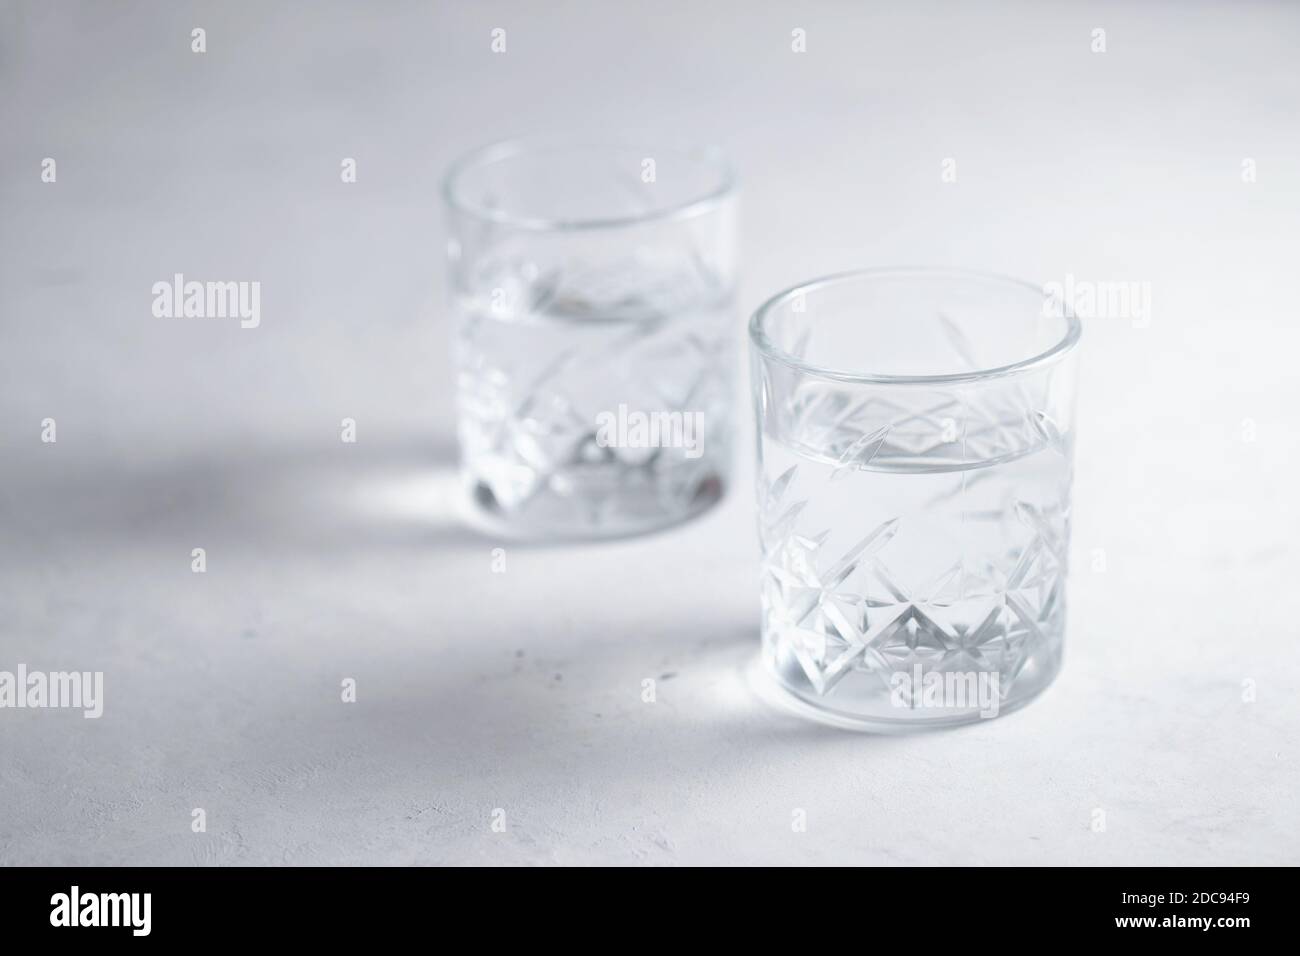 Deux verres d'eau ou de liquide transparent sur la table un mode de vie sain Banque D'Images